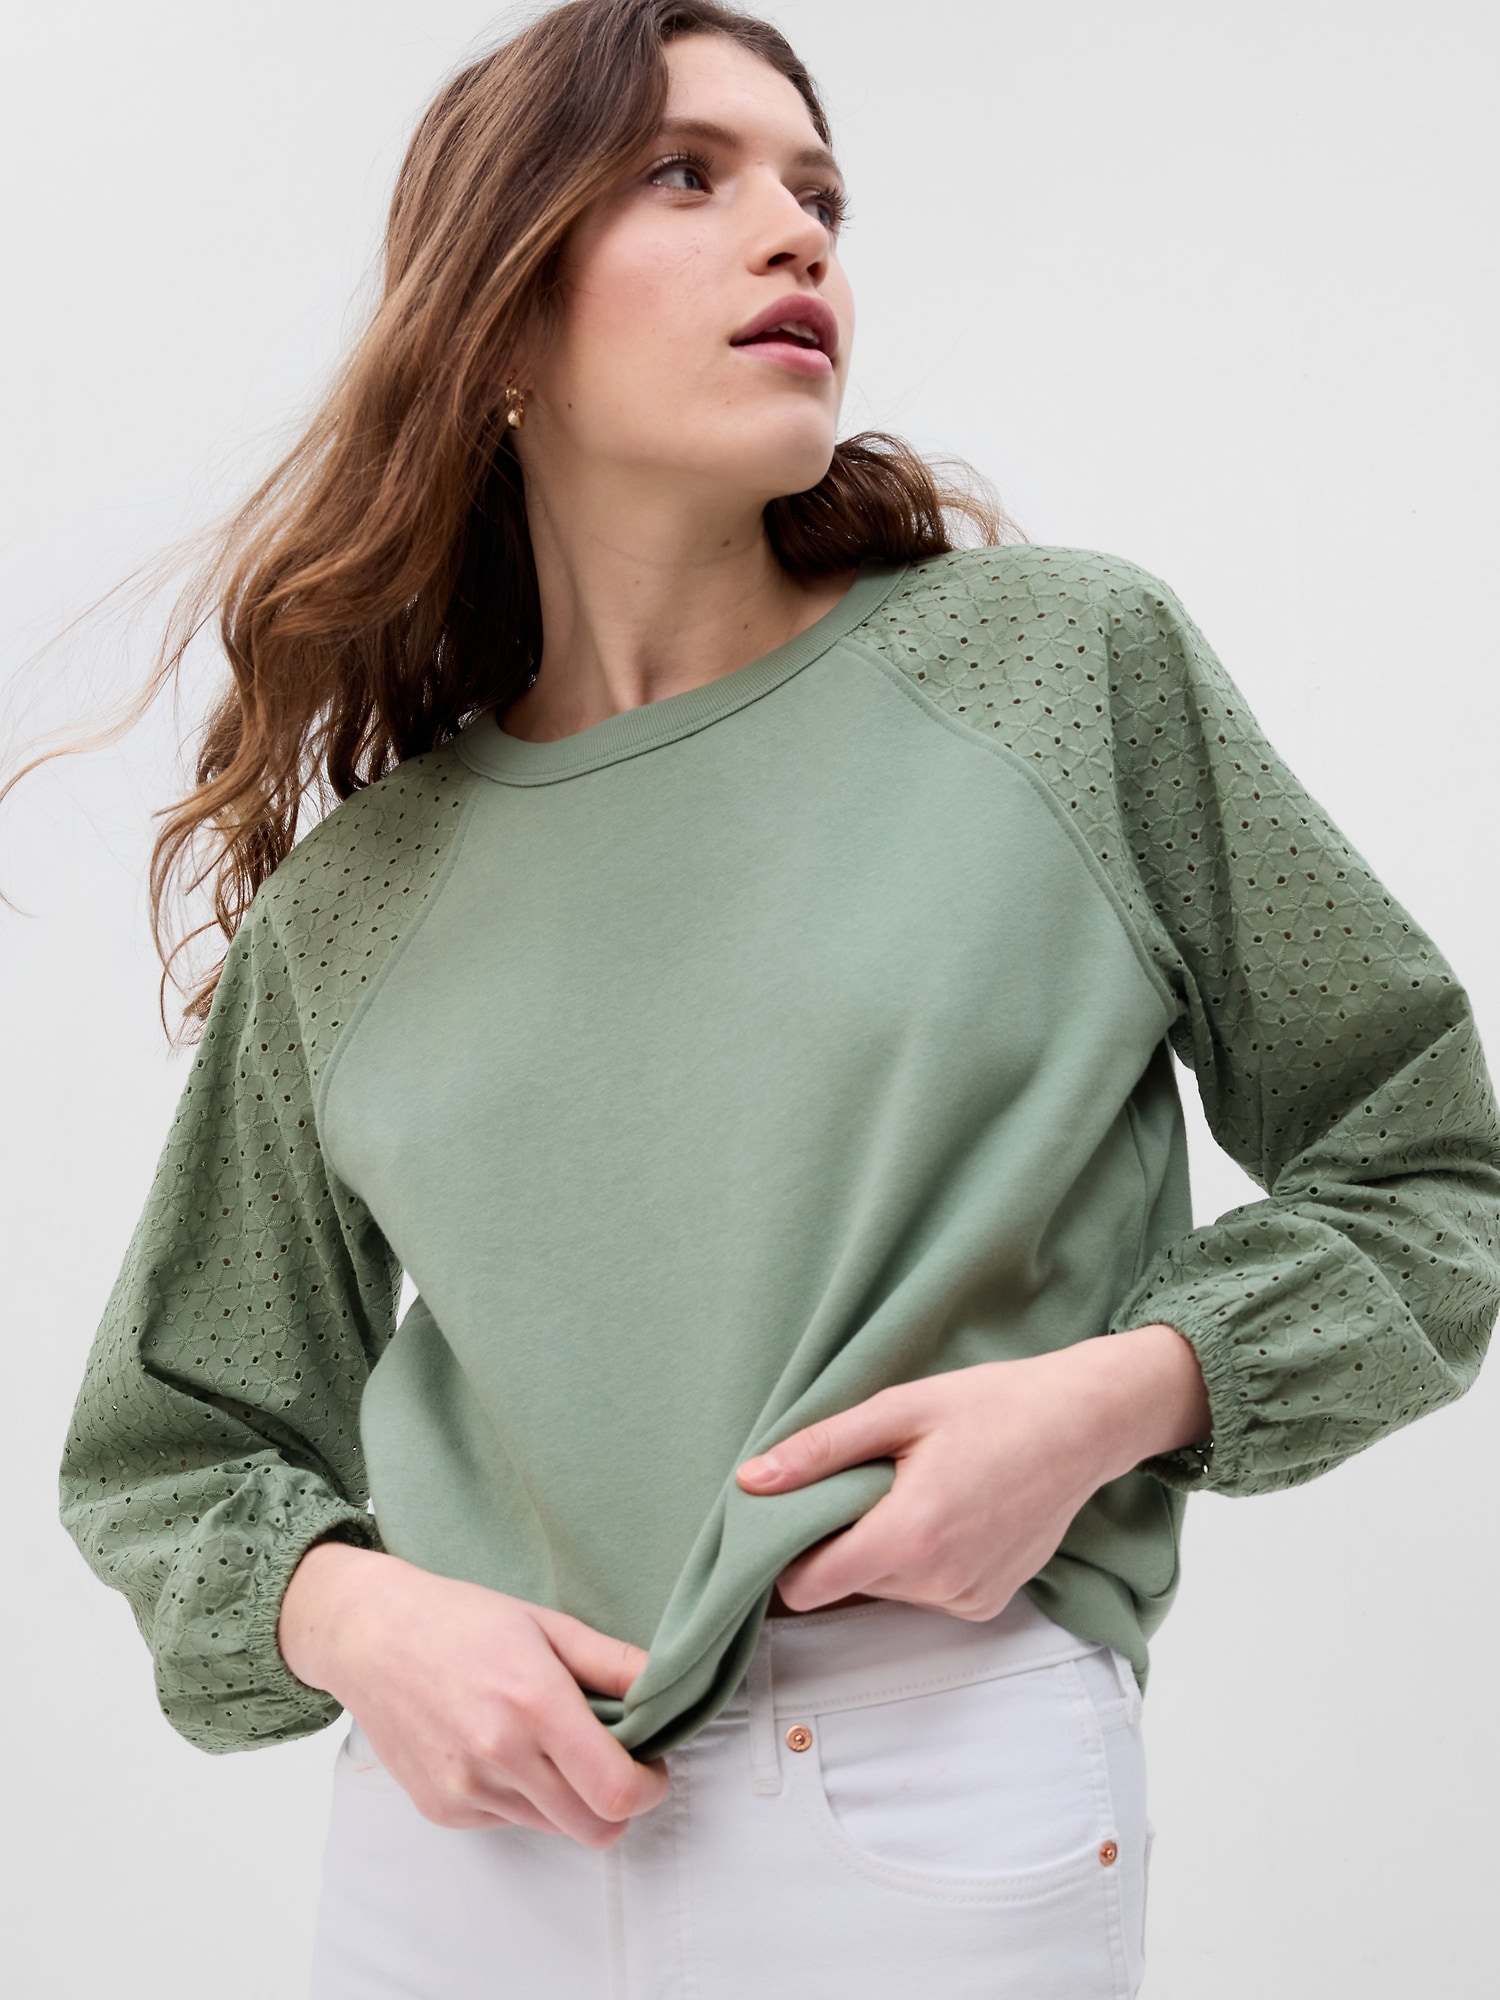 GAP Vintage Soft Madeira Sweatshirt - Women